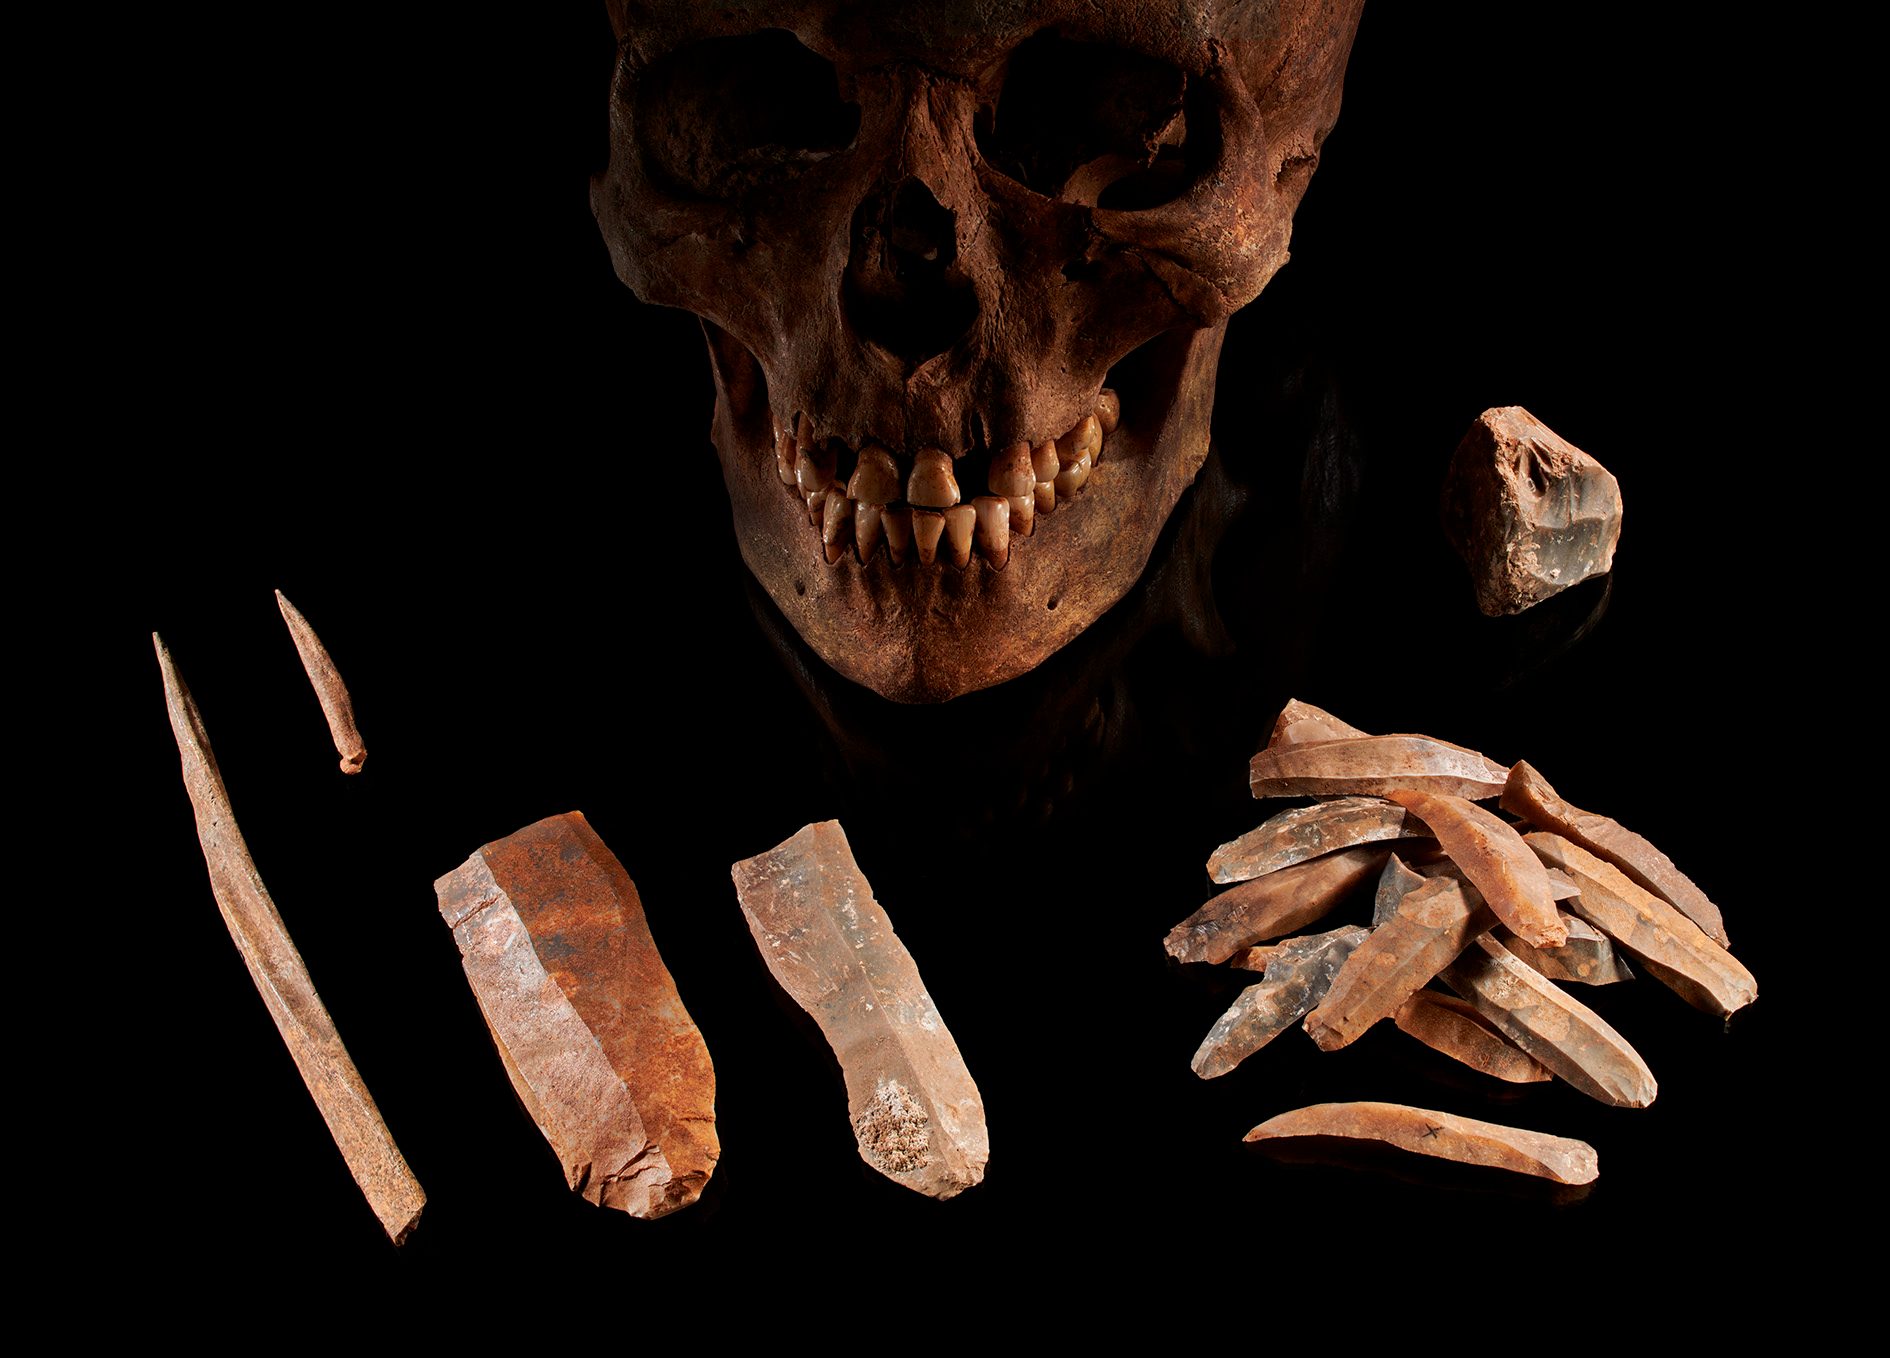 Hasta ahora, las herramientas y objetos encontrados por los arqueólogos han ayudado a determinar las culturas que vivieron en esa época. (Foto: Volker Minkus)